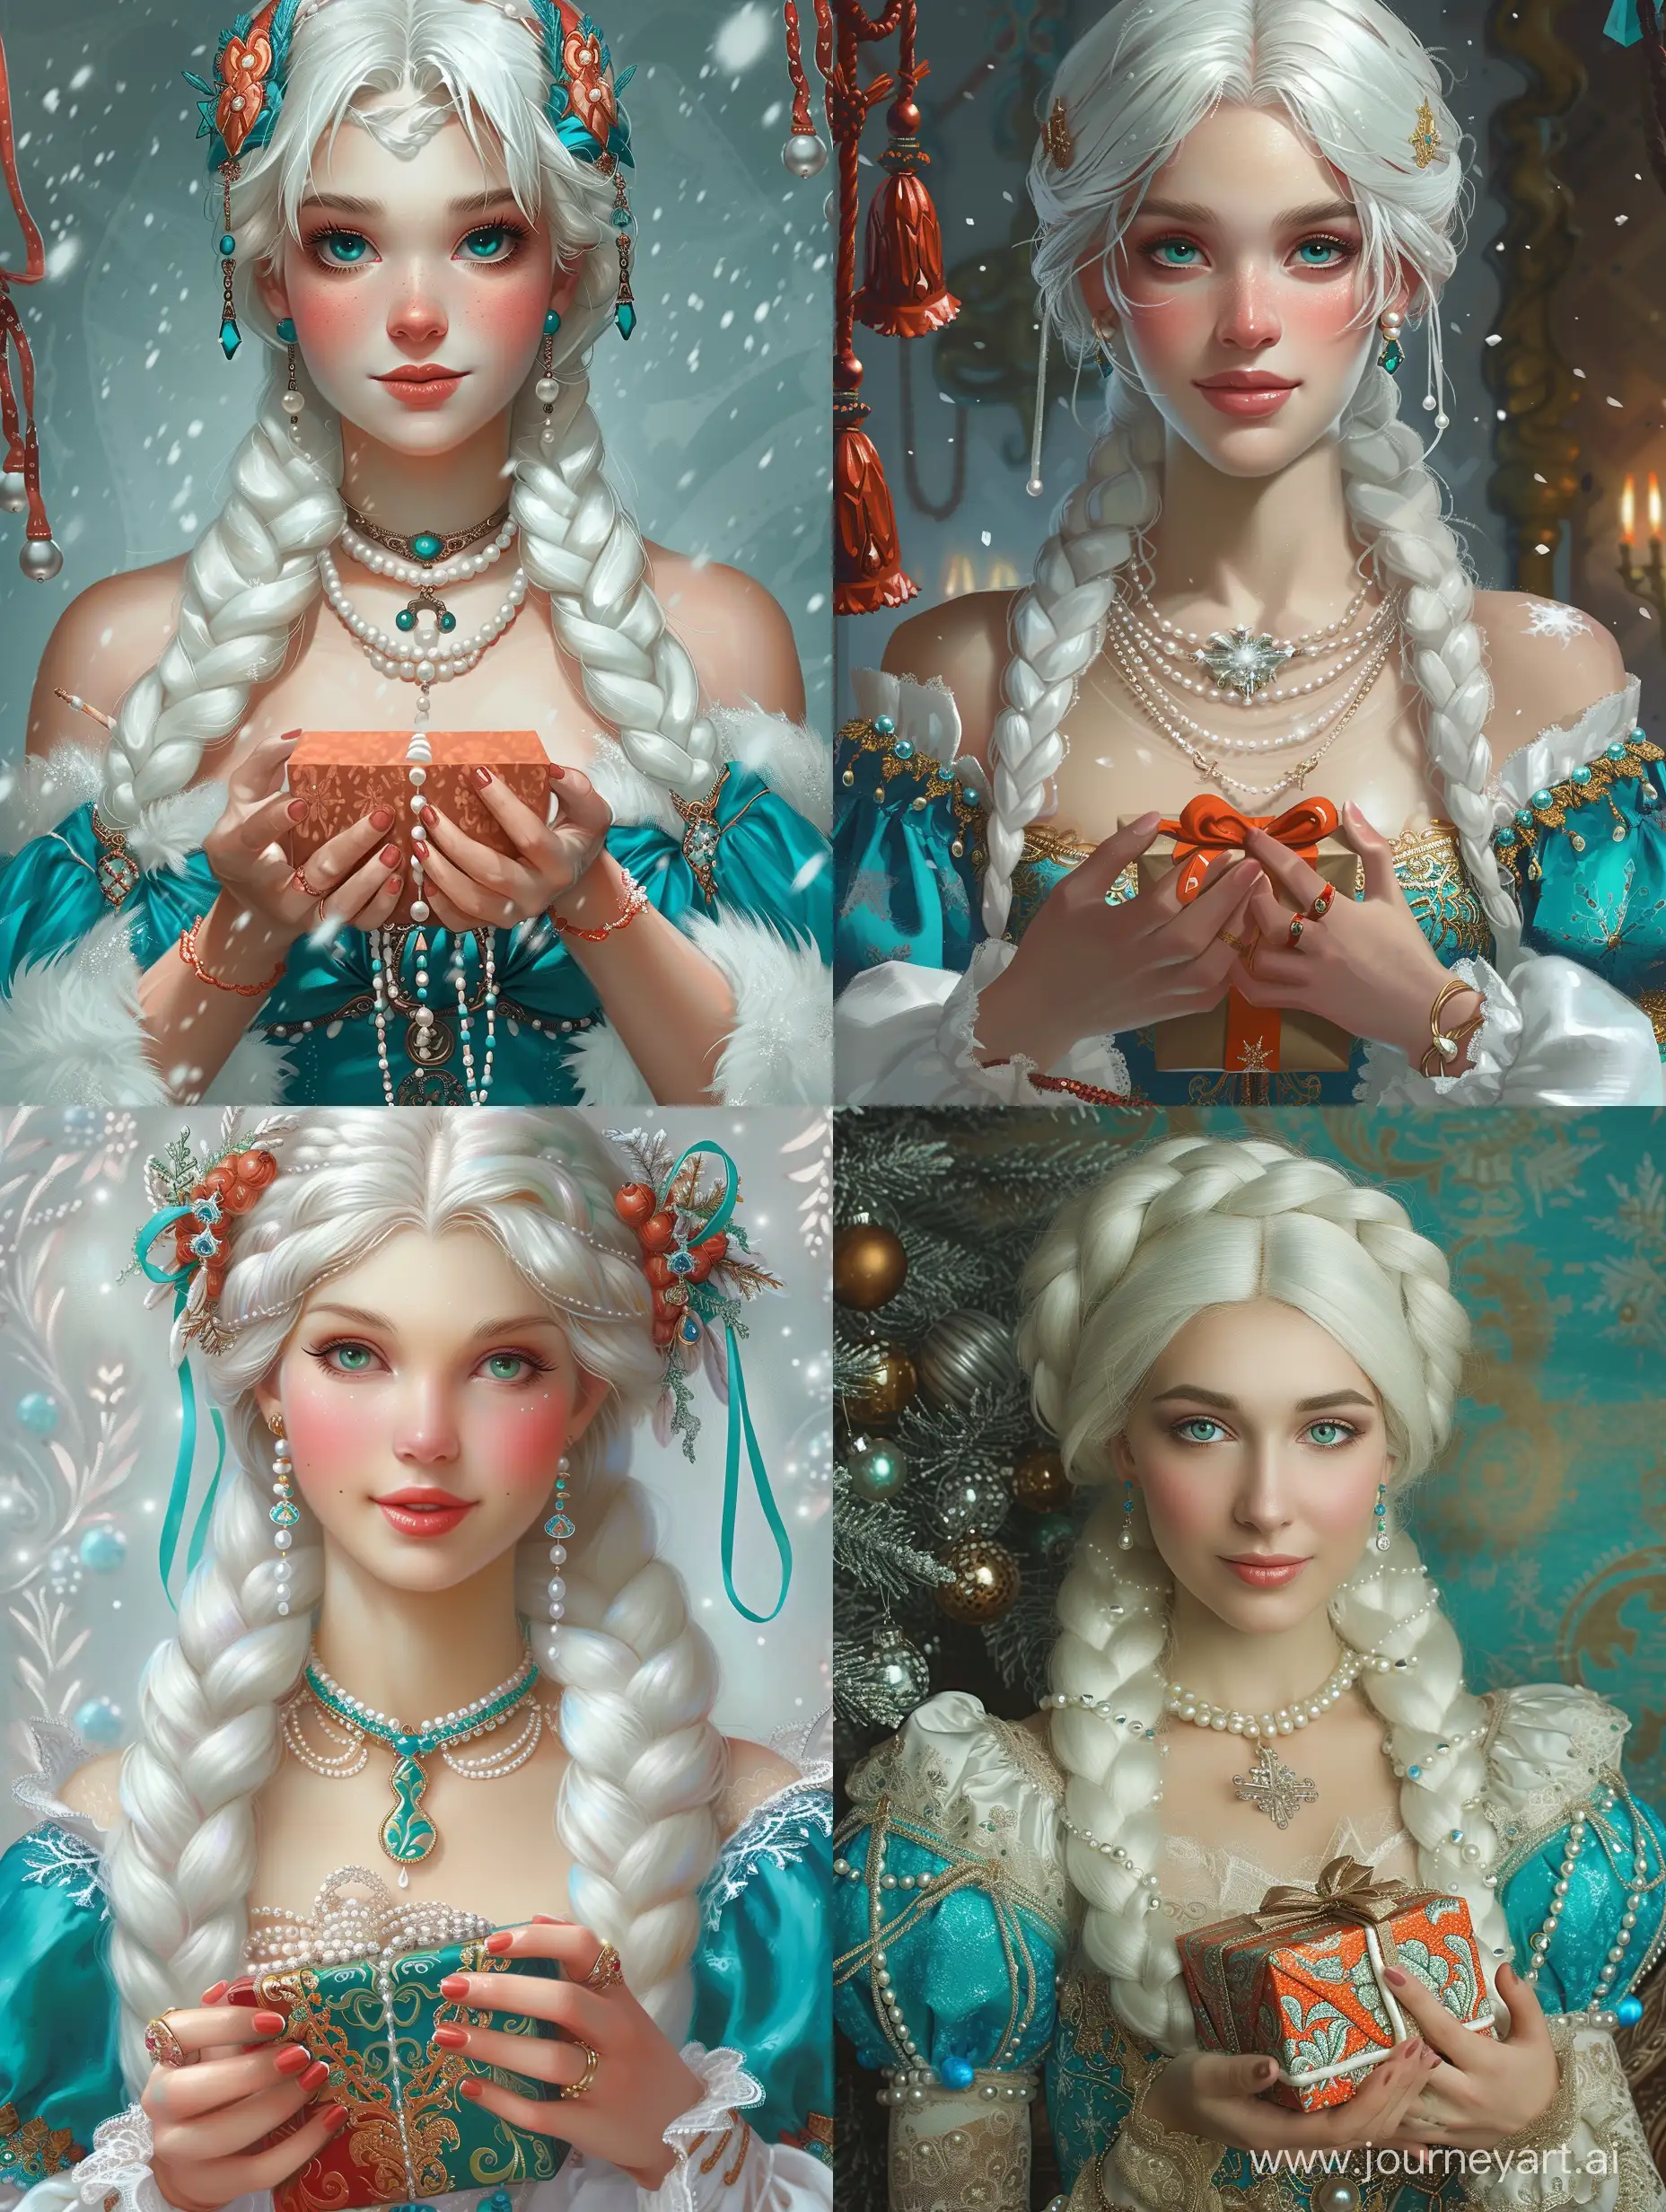 снегурочка, очень красивая, белые косы, жемчуга, голубой и бирюзовый цвет в нарядах, держит в руках подарок, иллюстрация